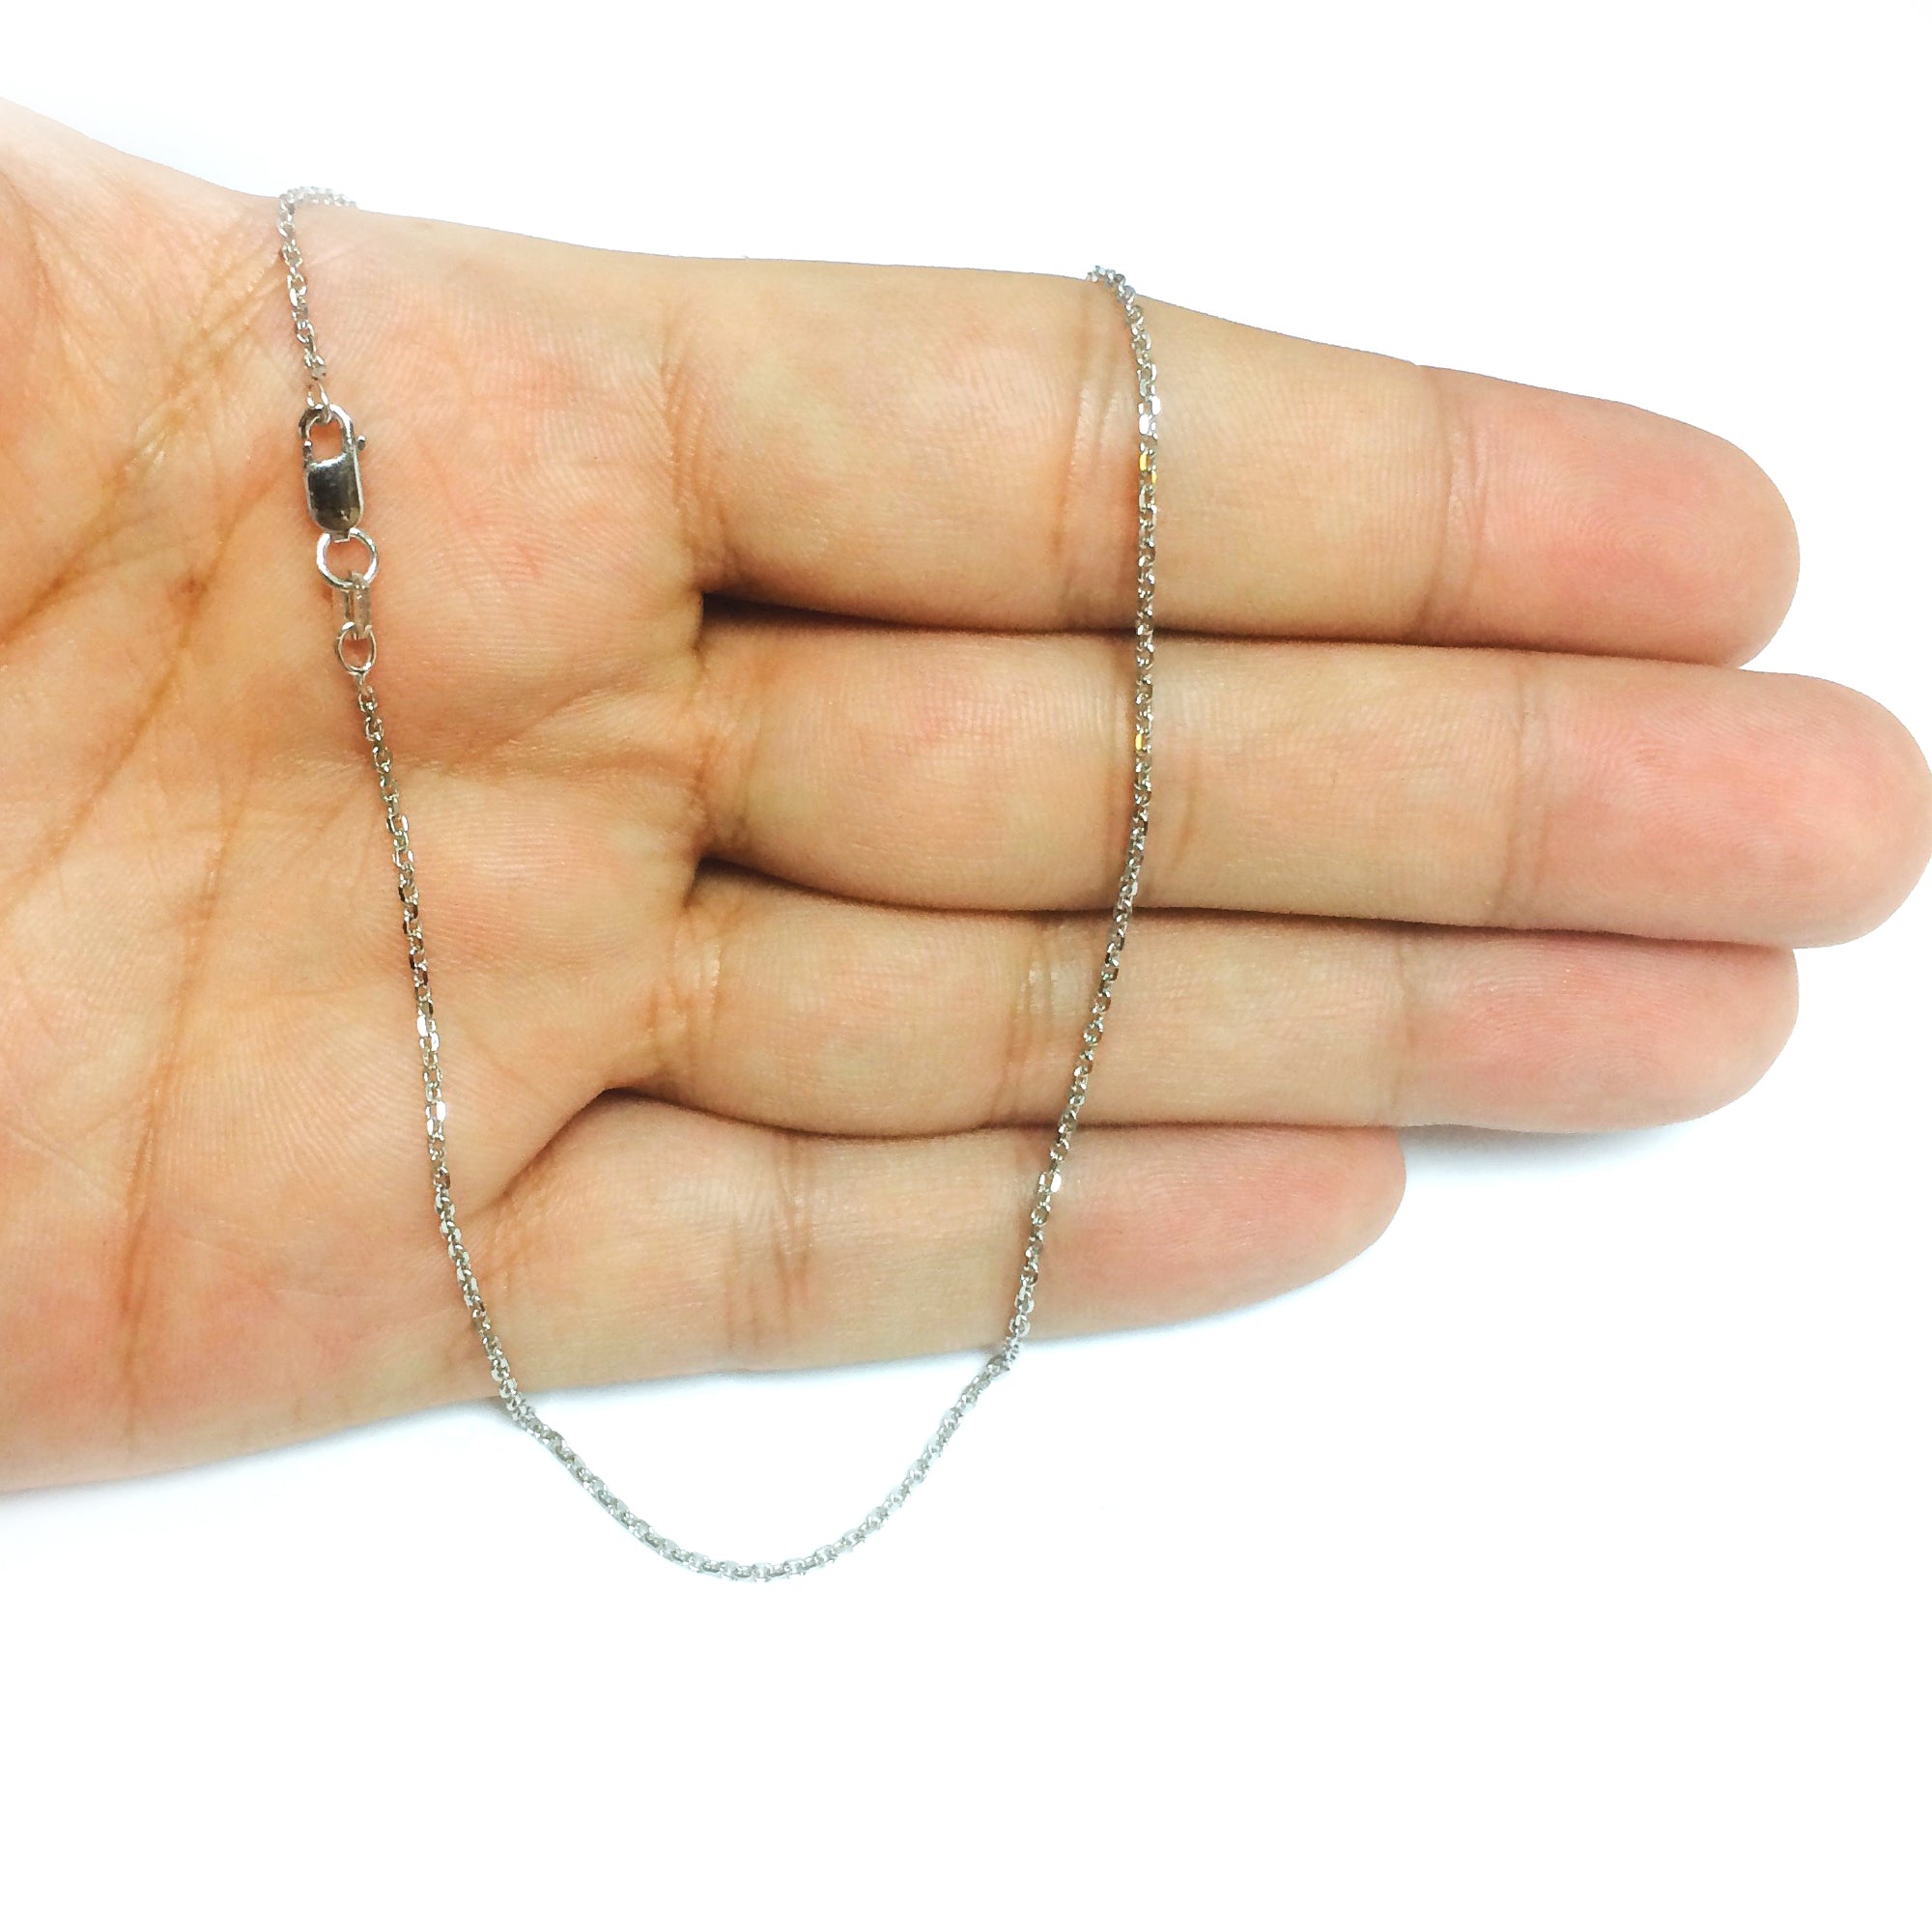 Collar de cadena tipo cable de plata de ley chapada en rodio, joyería fina de diseño de 1,4 mm para hombres y mujeres